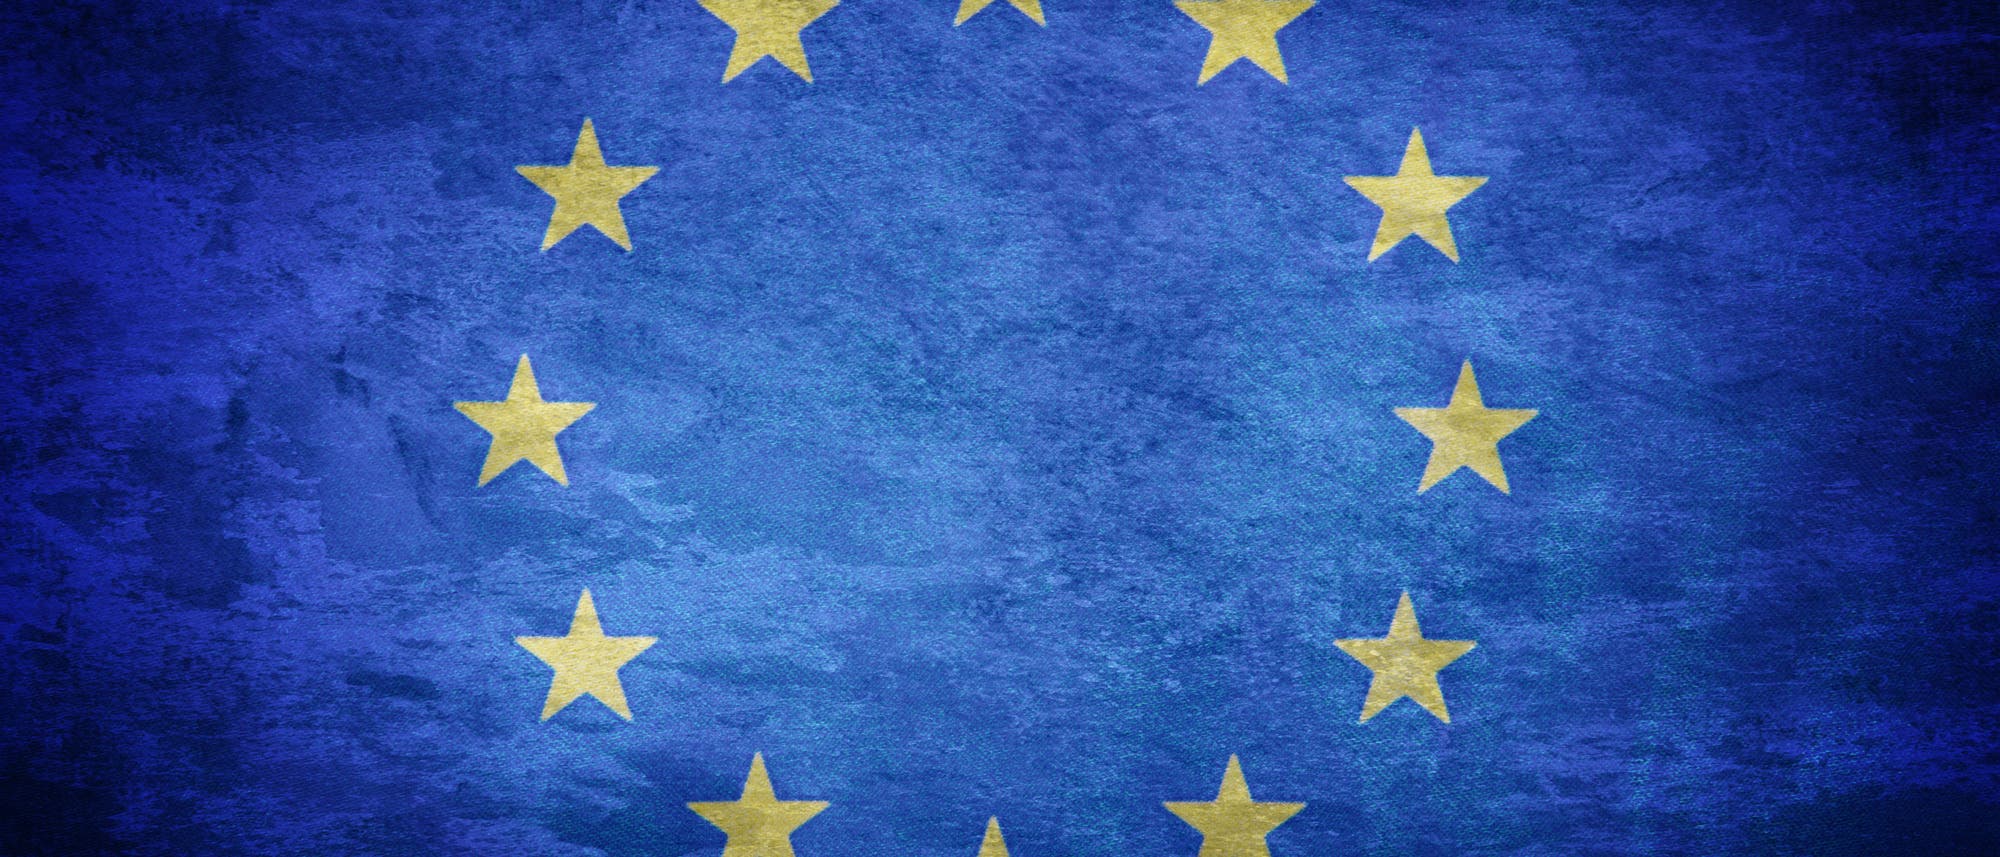 Europafahne 